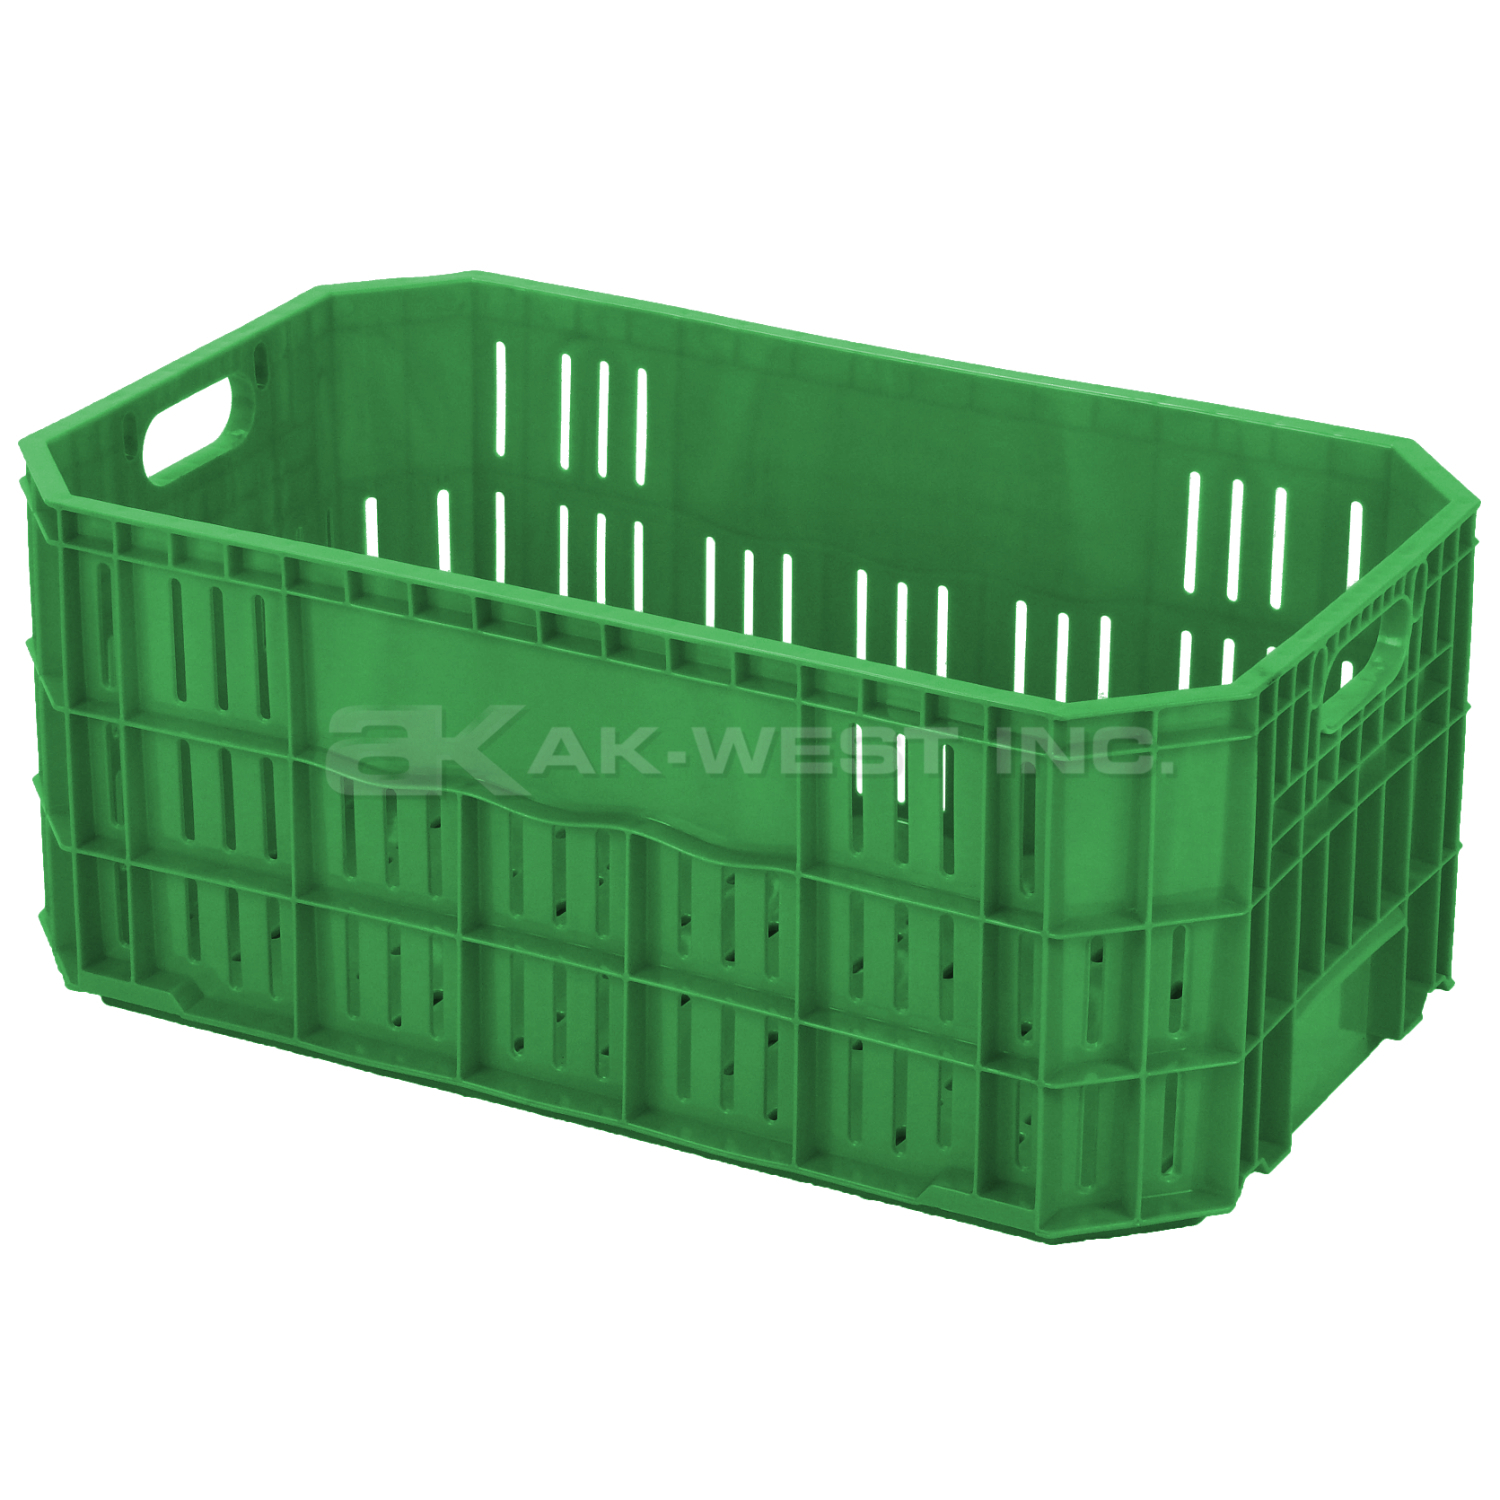 Green, 20"L x 12"W x 8"H Vented Handsfree Crate